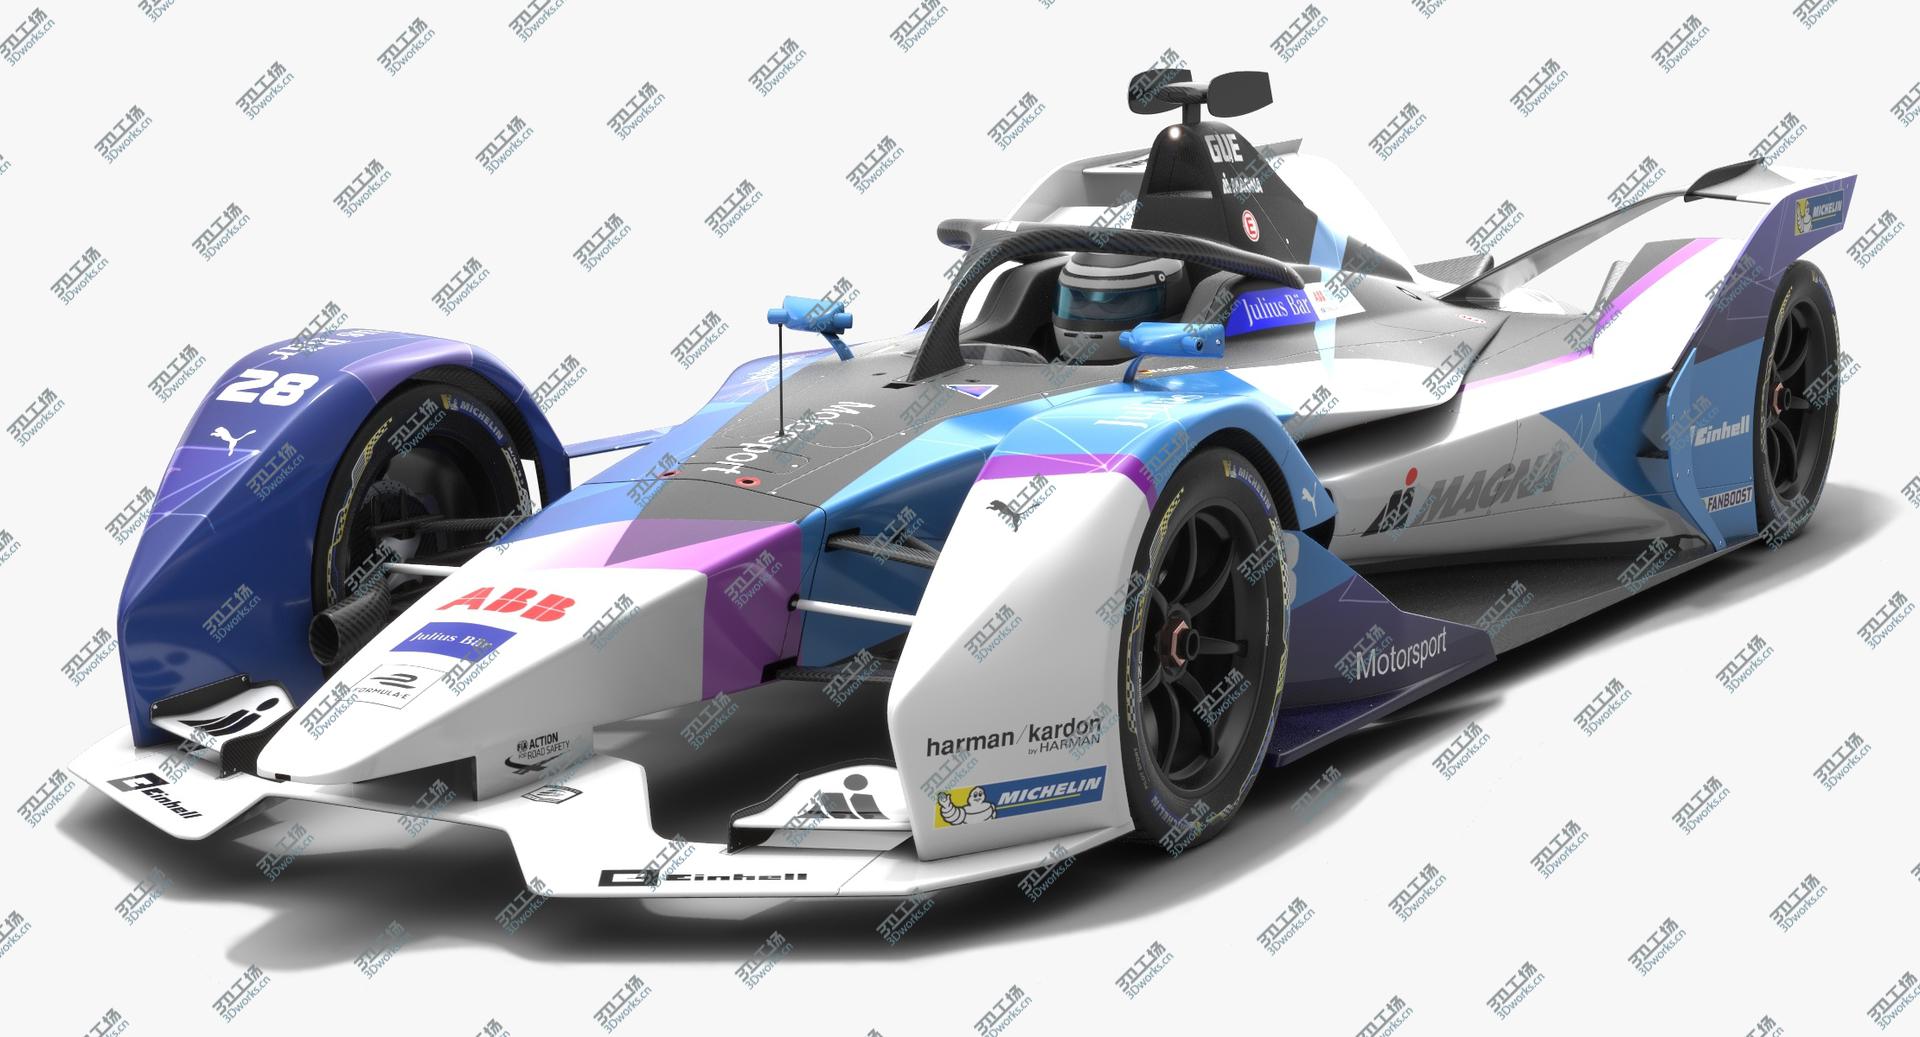 images/goods_img/2021040232/Andretti Motorsport Formula E Season 2019 2020 3D/2.jpg